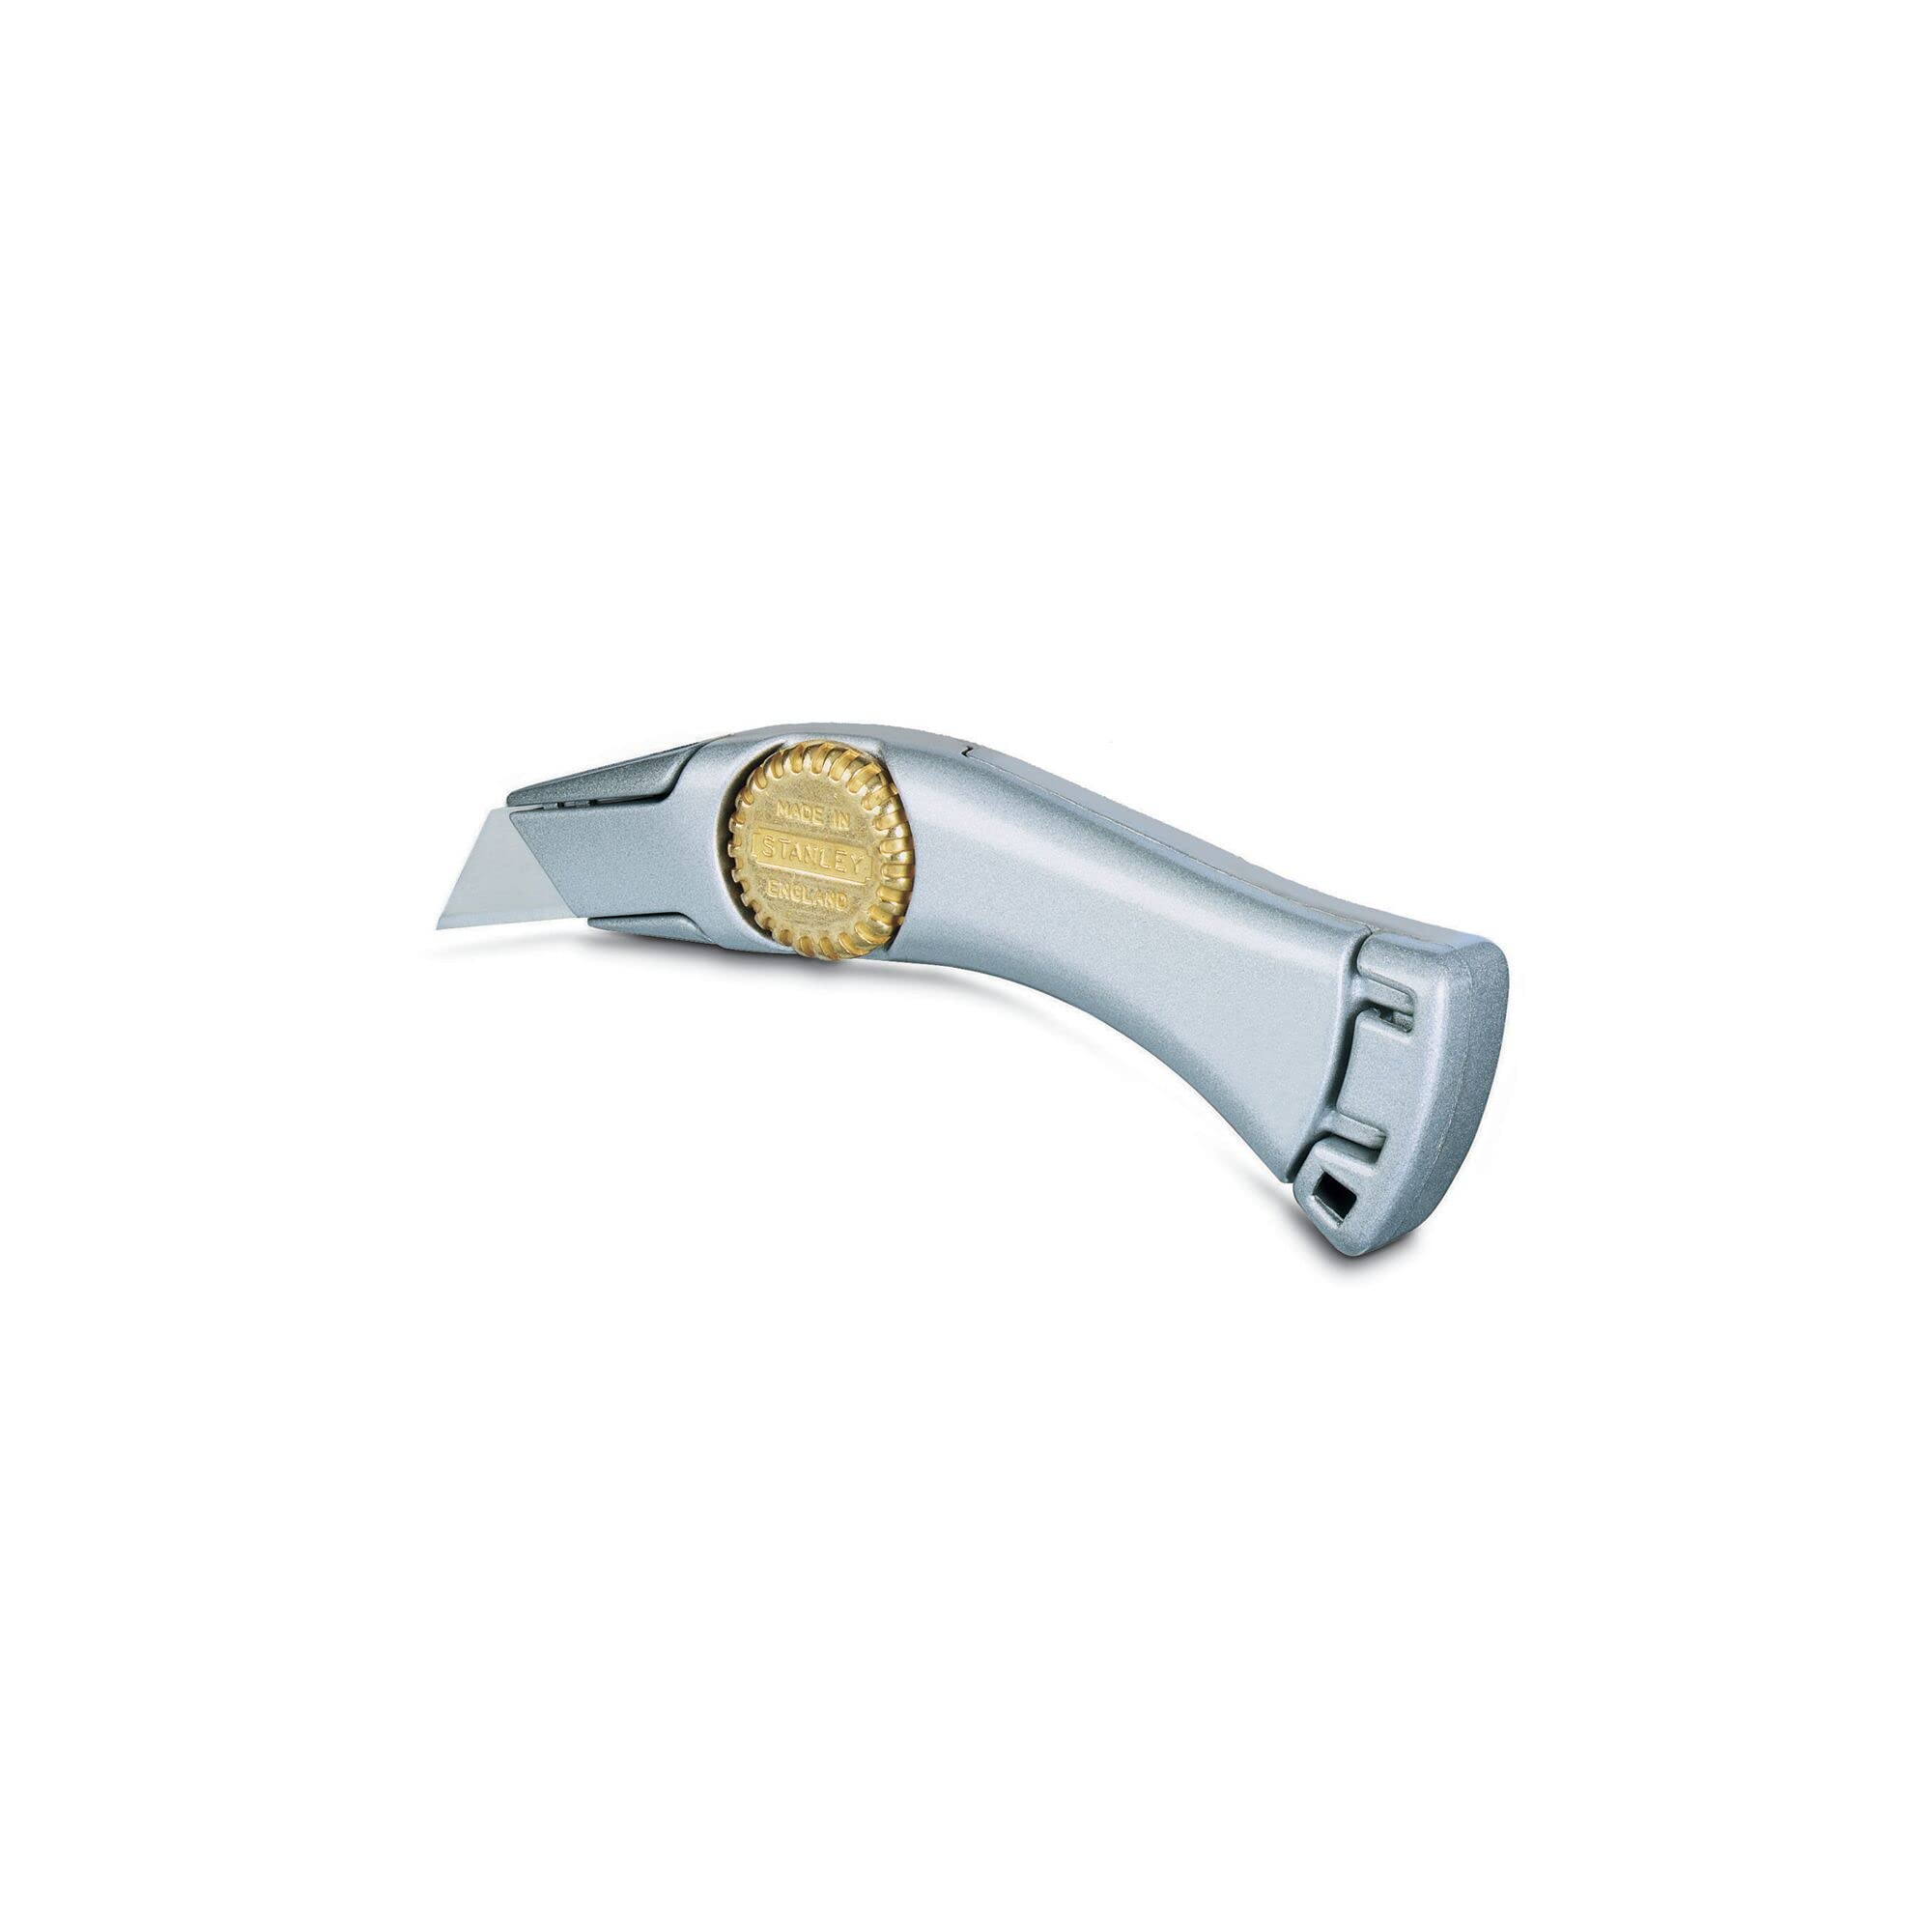 Stanley Messer Titan (feststehende Klinge, robustes Zinkdruckgehäuse, ergonomisches Design, InterLock) 1-10-550